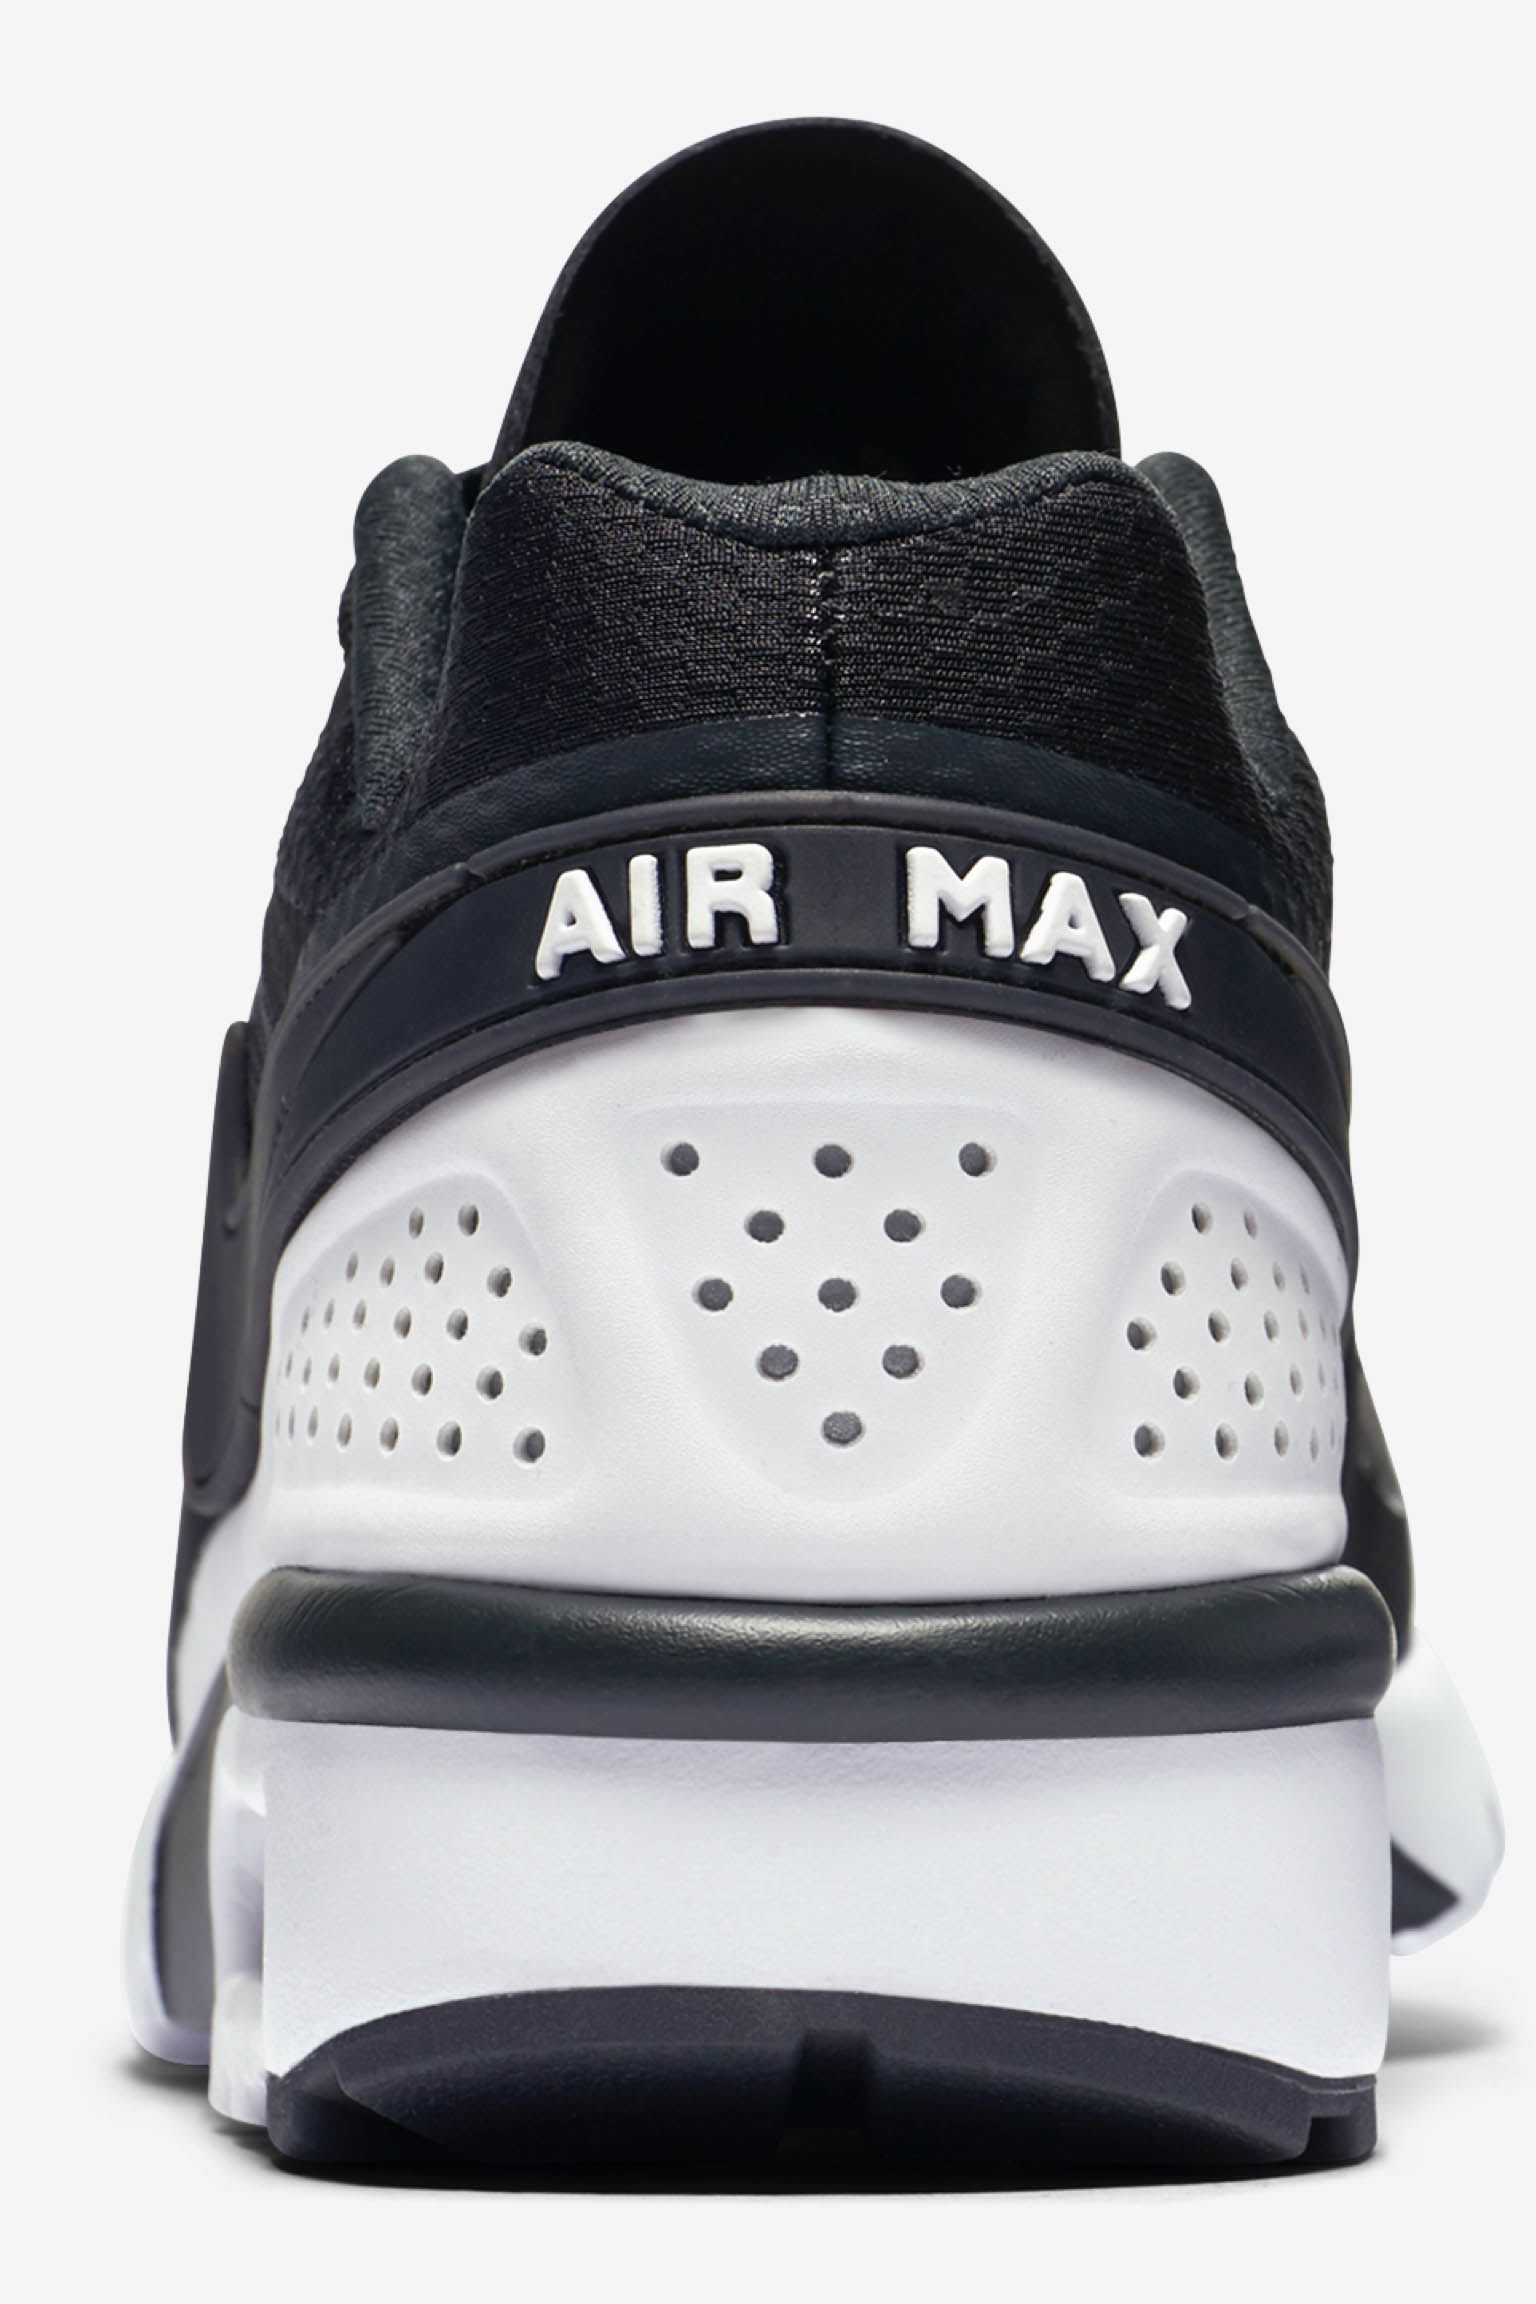 خلفيات هونر Nike Air Max BW Ultra 'Black & White' Release Date. Nike SNKRS خلفيات هونر